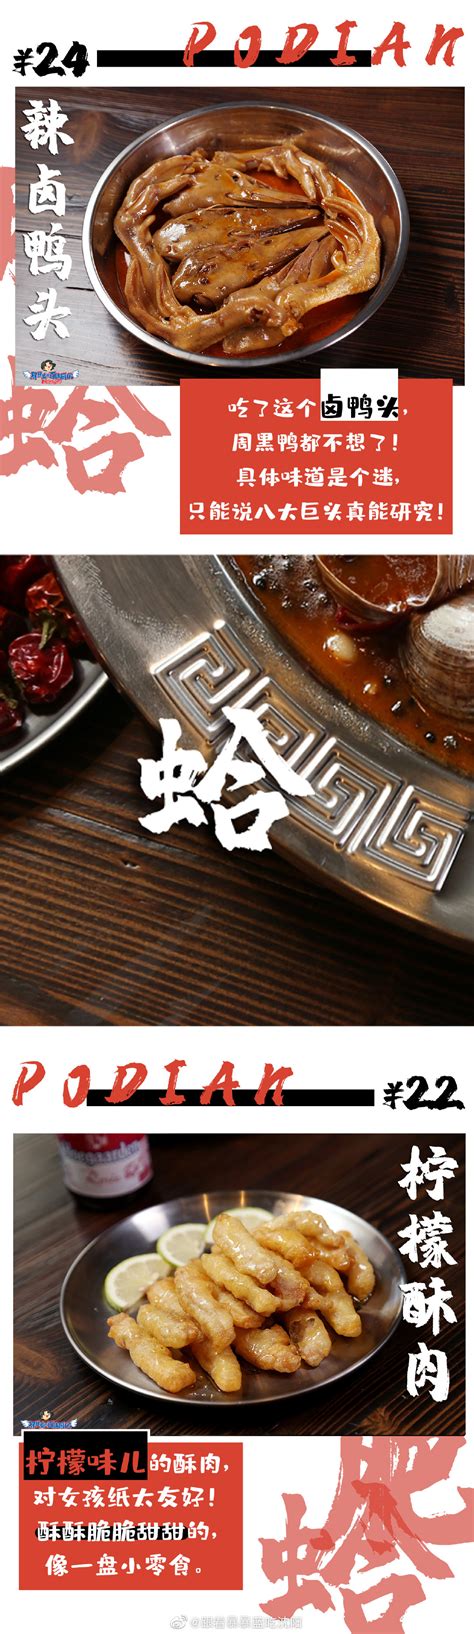 沈阳：餐饮业逐渐“重启”_图片新闻_中国政府网